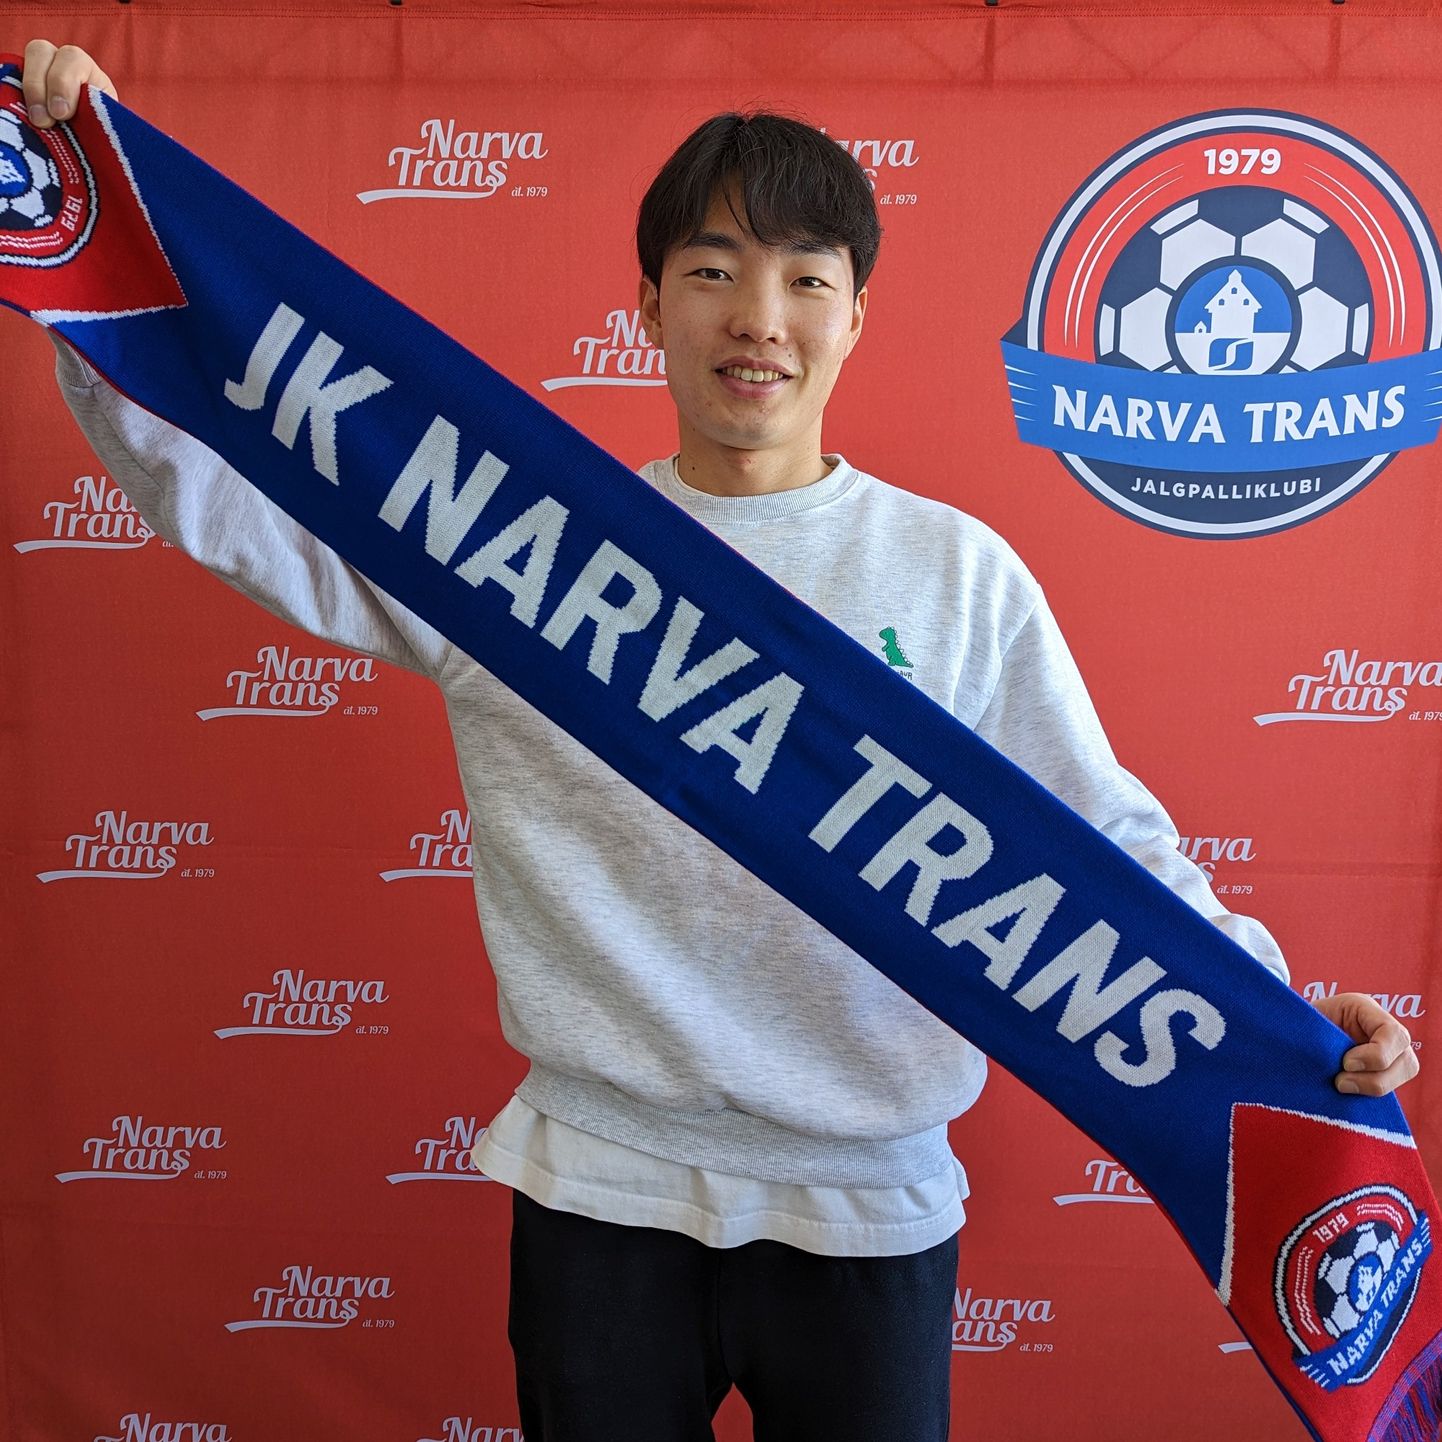 Последним ряды "Narva Trans" пополнил 28-летний южнокорейский полузащитник До Хён Ким.